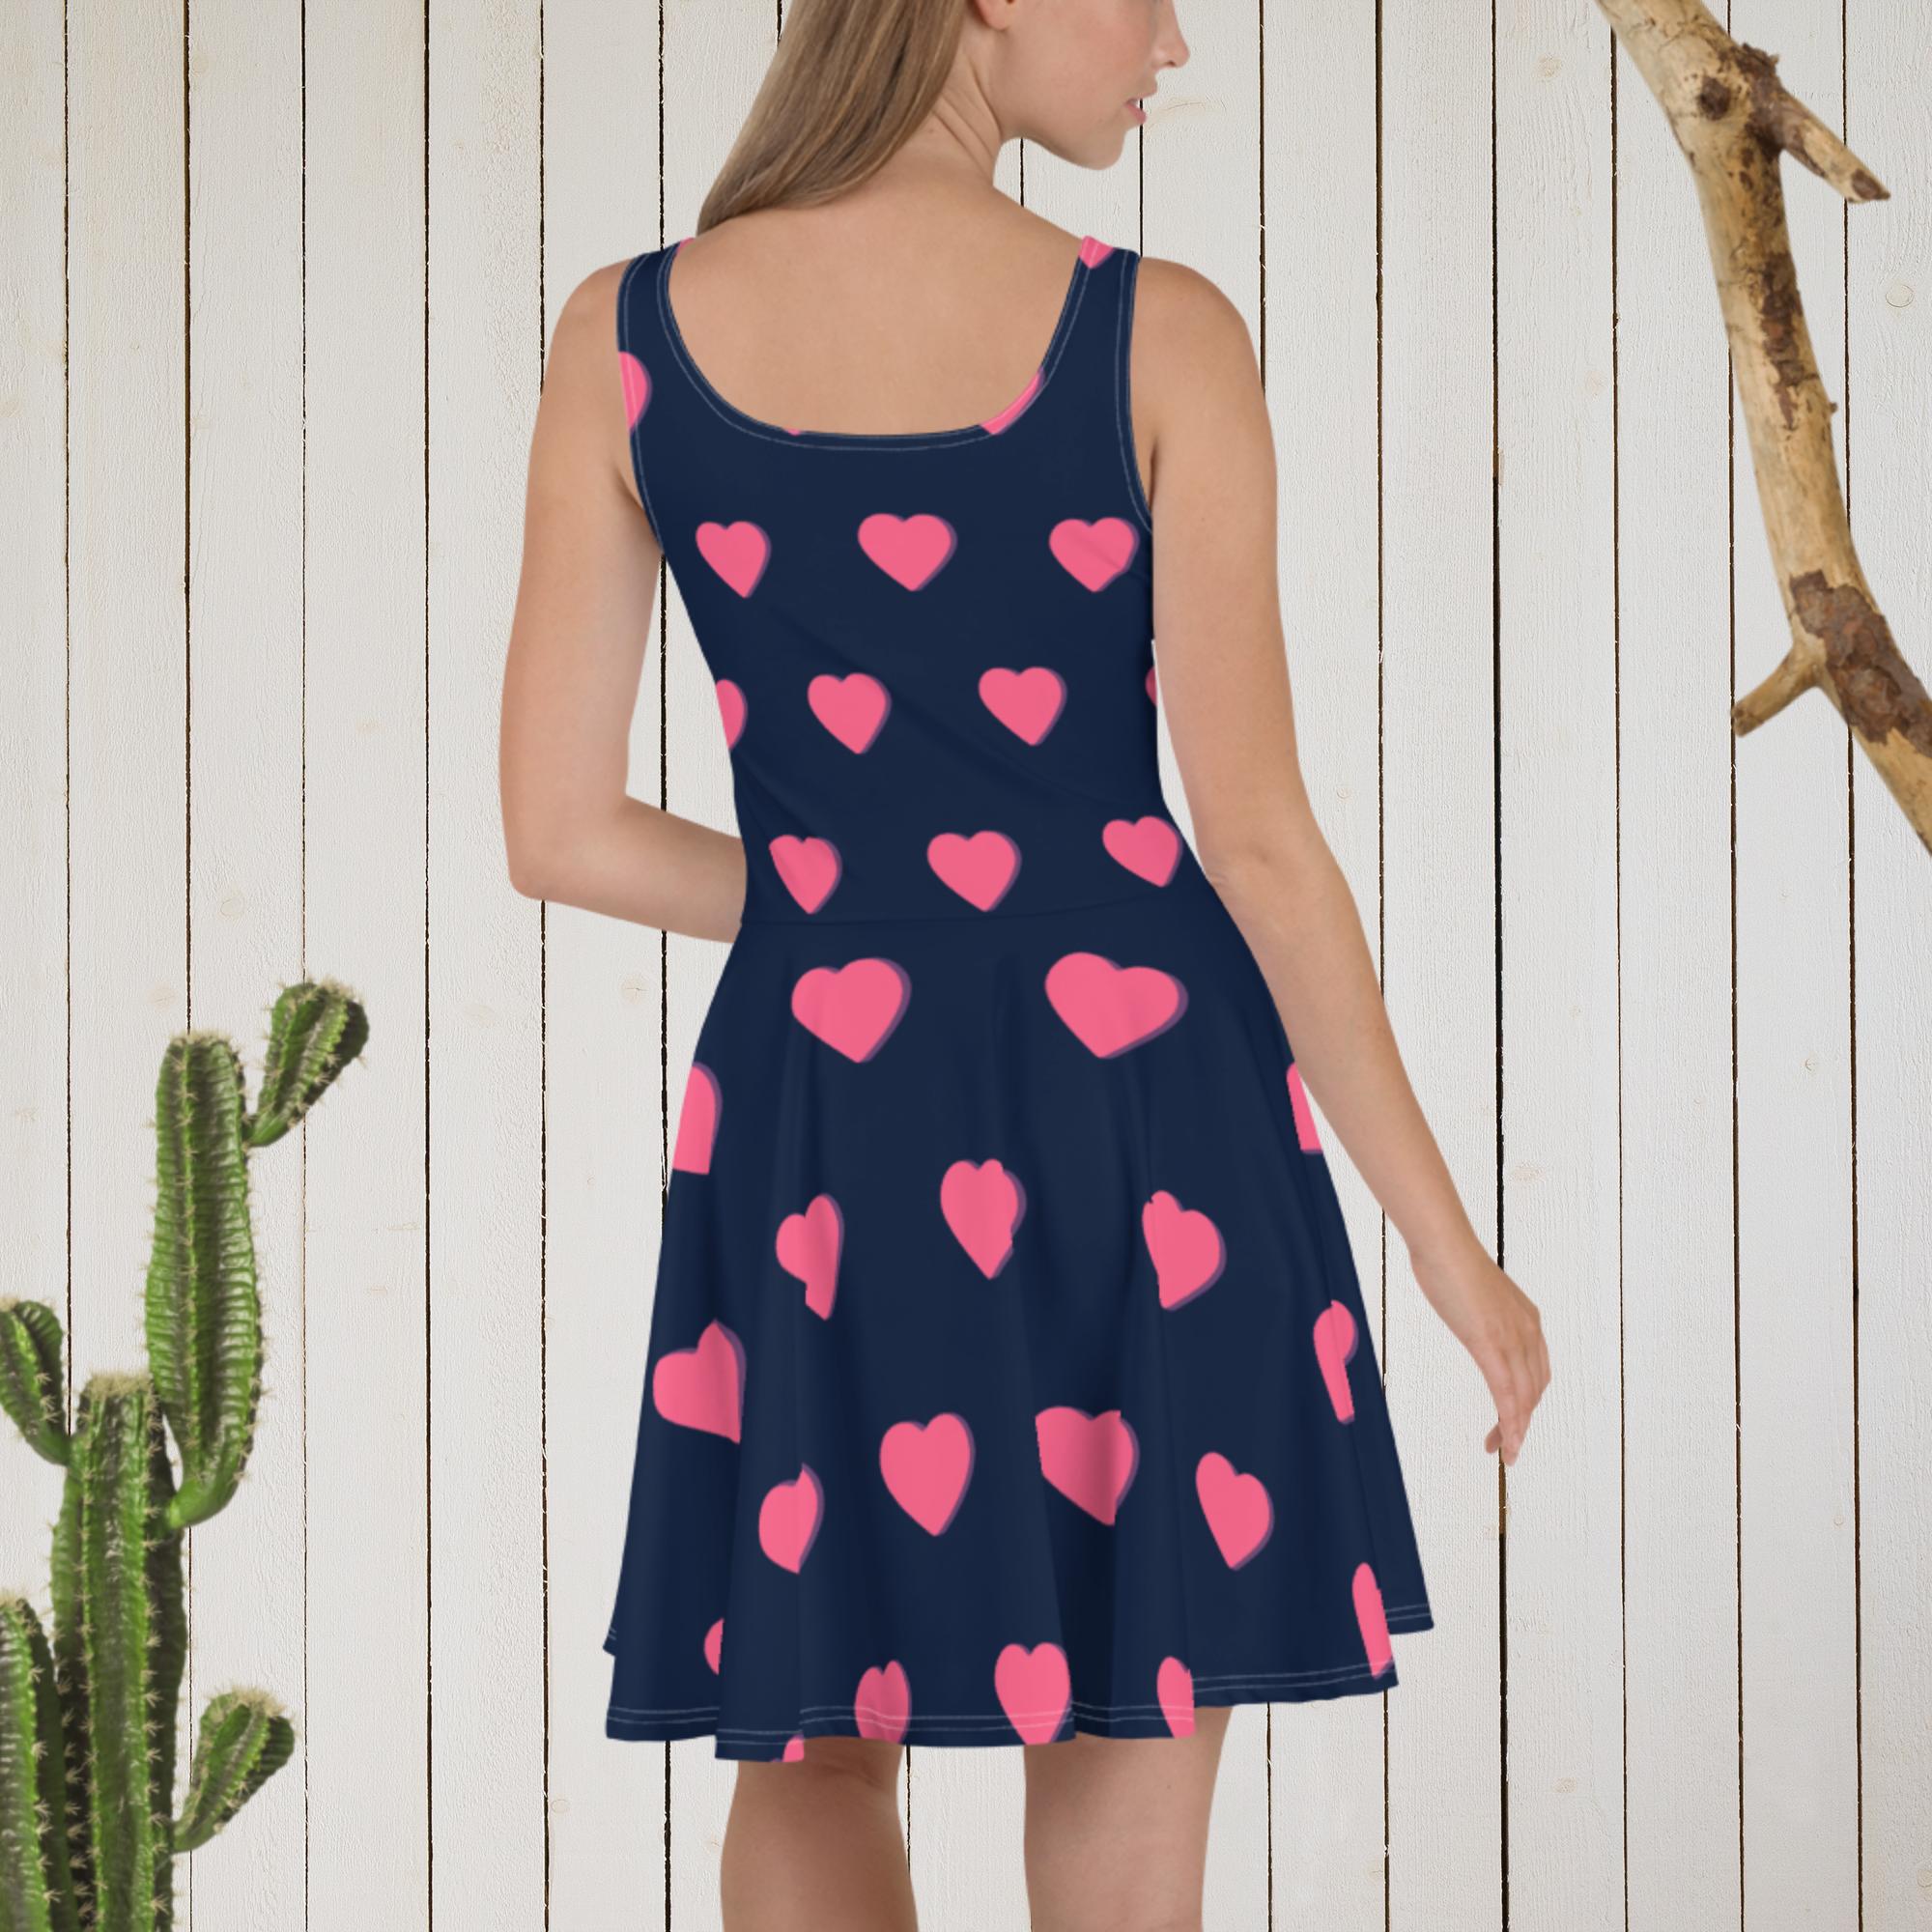 Dress- Skater Dress, heart designed dress, blue/pink dress